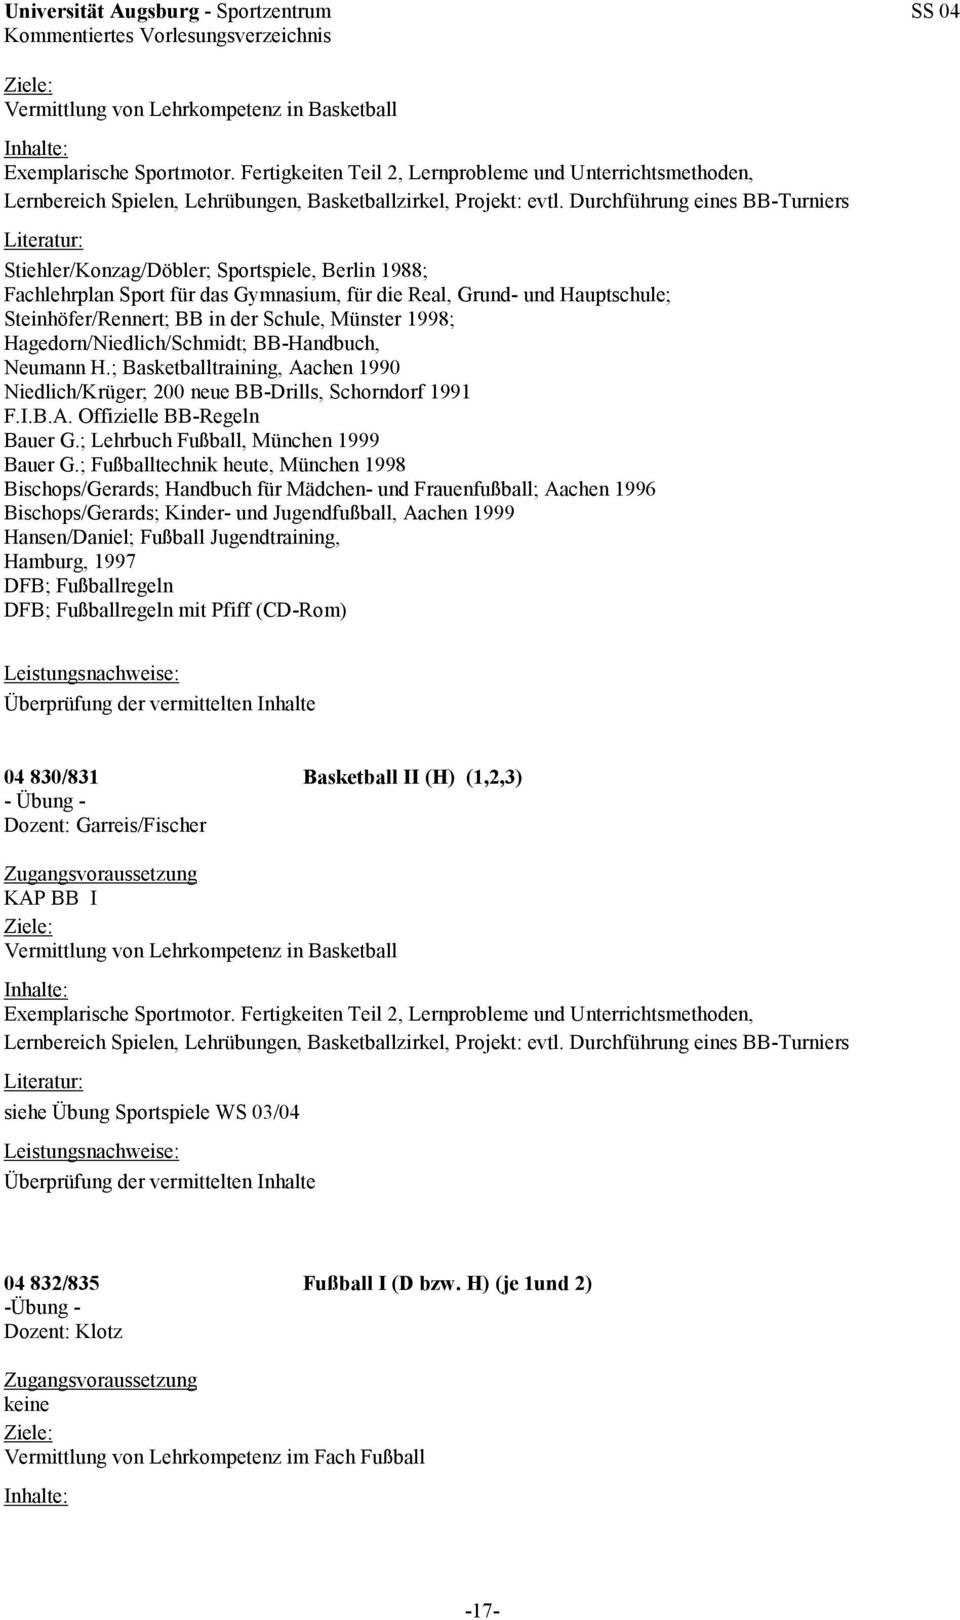 Münster 1998; Hagedorn/Niedlich/Schmidt; BB-Handbuch, Neumann H.; Basketballtraining, Aachen 1990 Niedlich/Krüger; 200 neue BB-Drills, Schorndorf 1991 F.I.B.A. Offizielle BB-Regeln Bauer G.